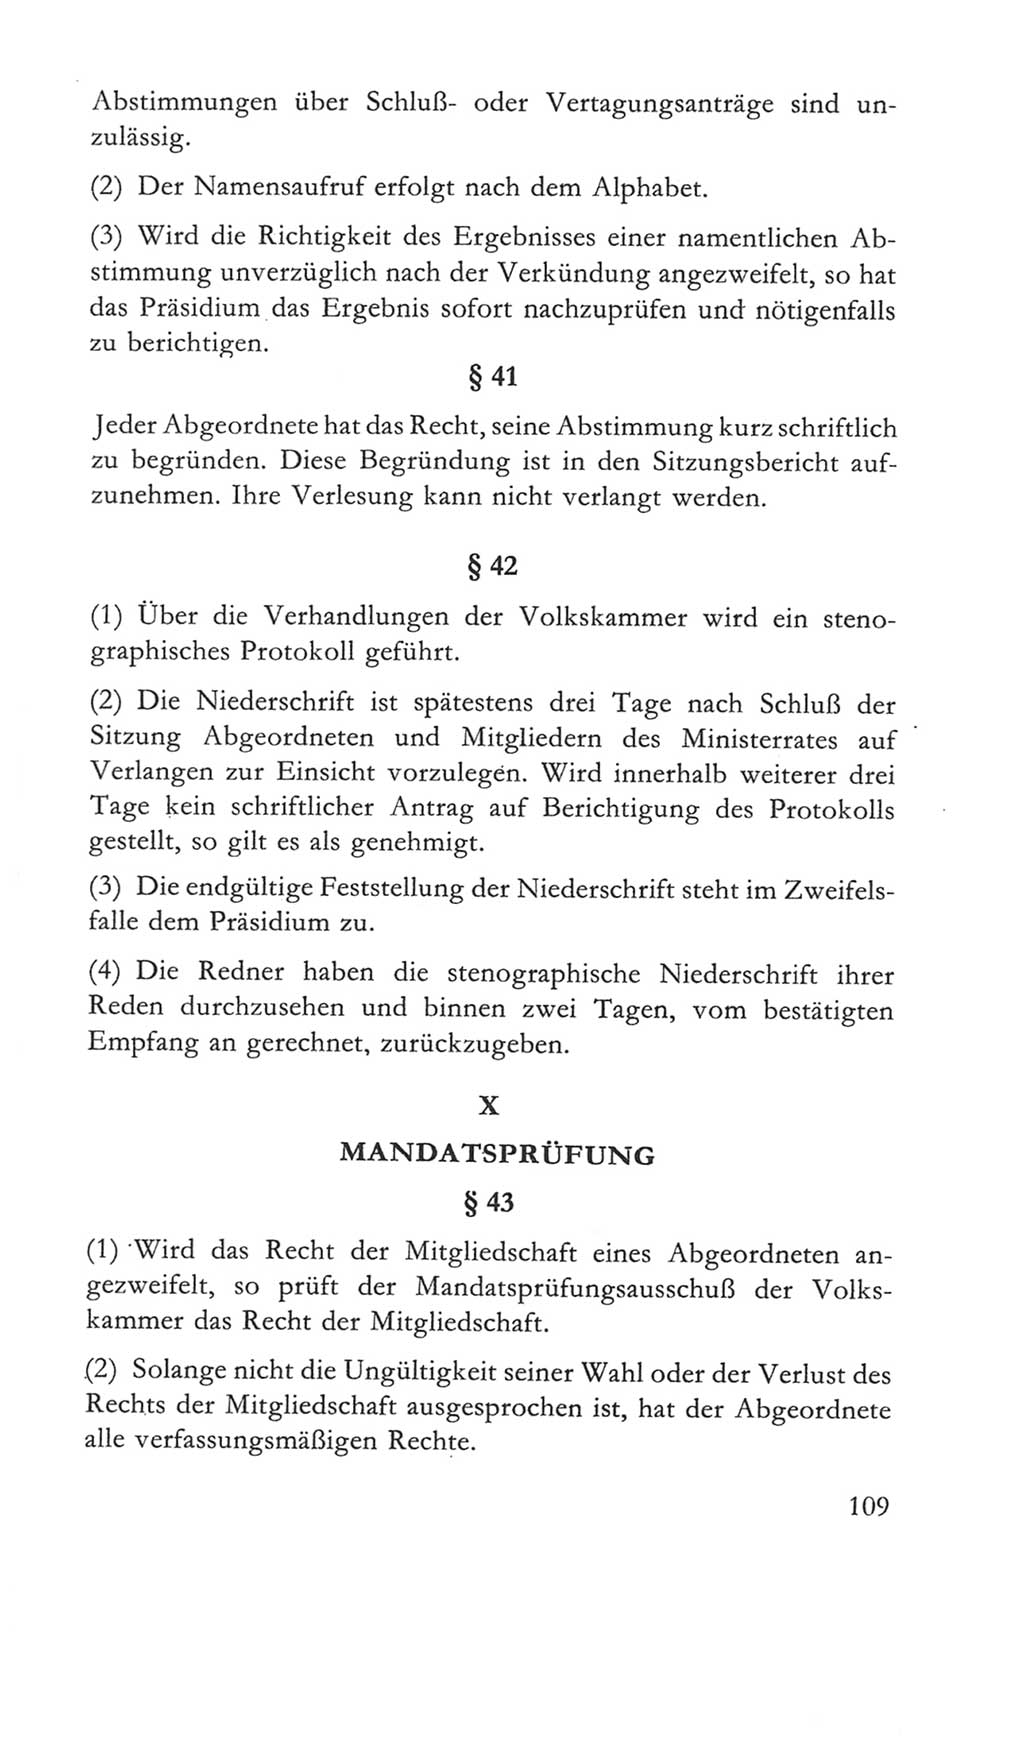 Volkskammer (VK) der Deutschen Demokratischen Republik (DDR) 5. Wahlperiode 1967-1971, Seite 109 (VK. DDR 5. WP. 1967-1971, S. 109)